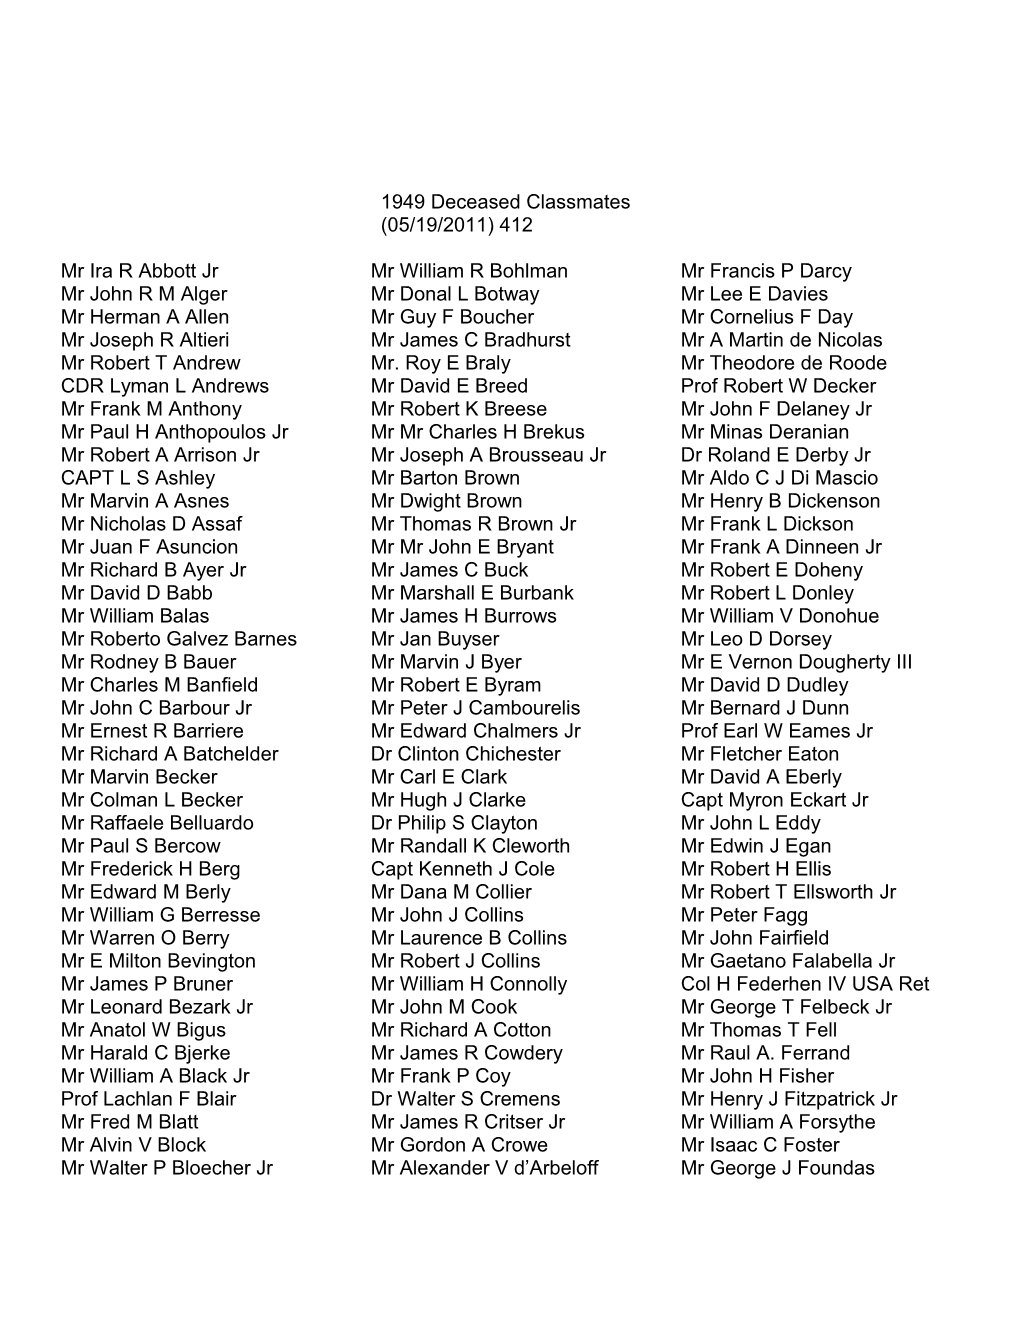 1949 Deceased Classmates (05/19/2011)412